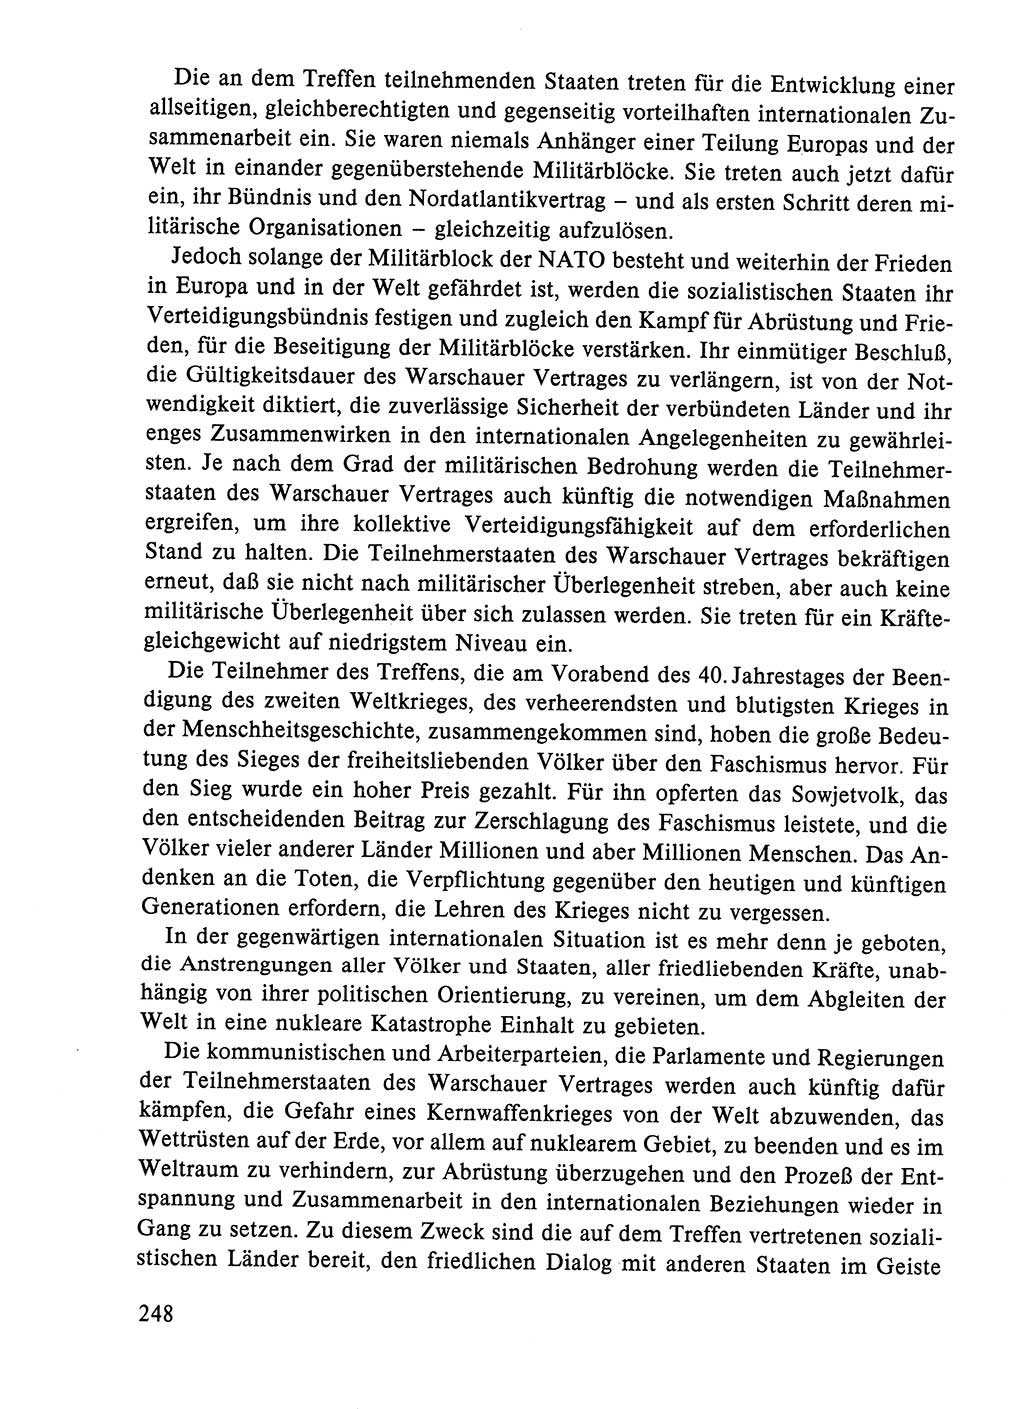 Dokumente der Sozialistischen Einheitspartei Deutschlands (SED) [Deutsche Demokratische Republik (DDR)] 1984-1985, Seite 179 (Dok. SED DDR 1984-1985, S. 179)